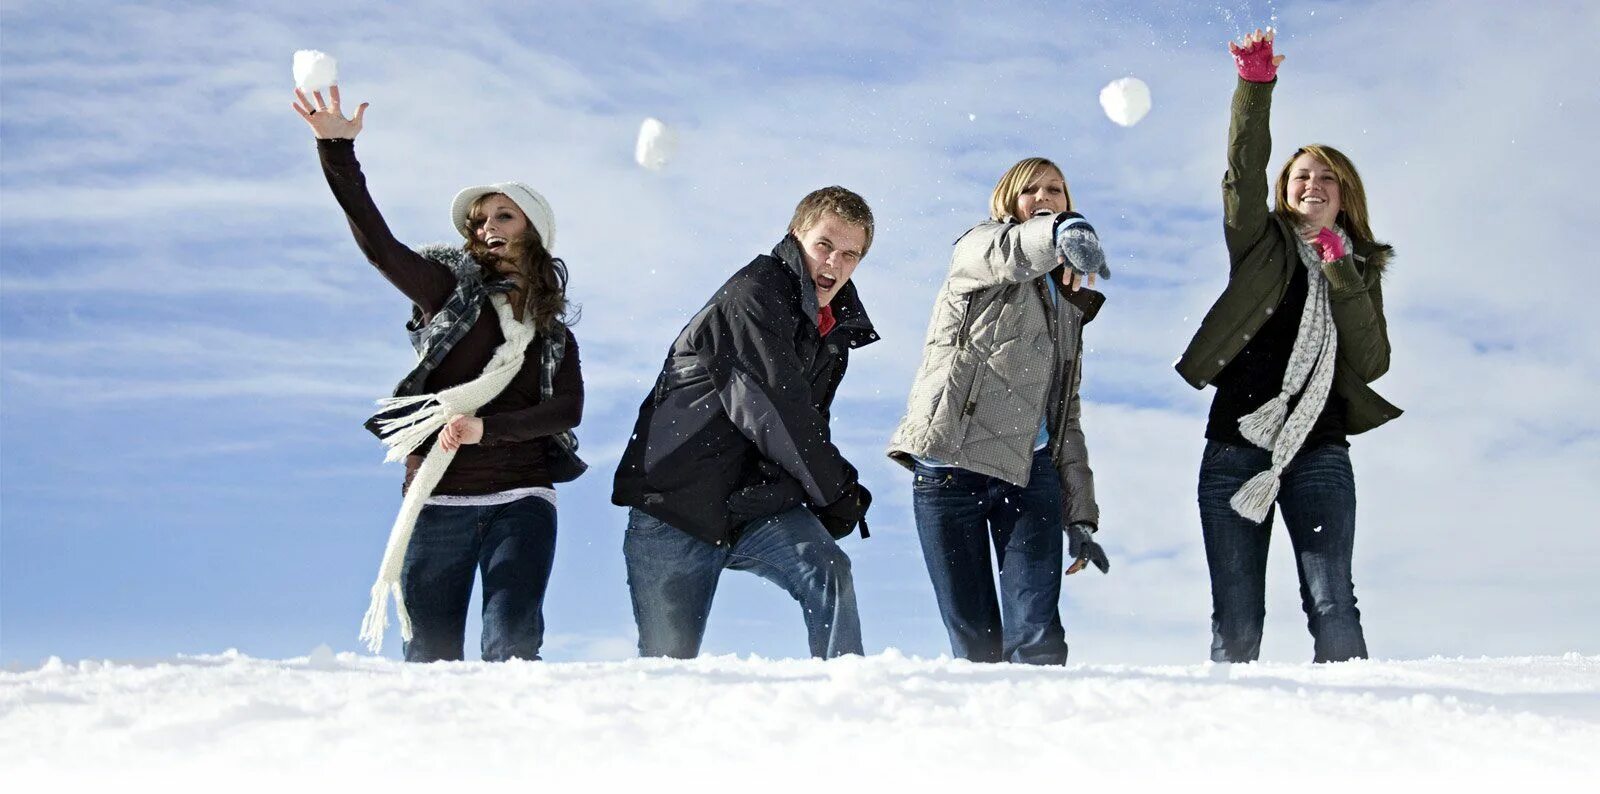 Снежки по взрослому. Игра в снежки. Люди зимы. Прогулка с друзьями зимой. Подростки зимой.